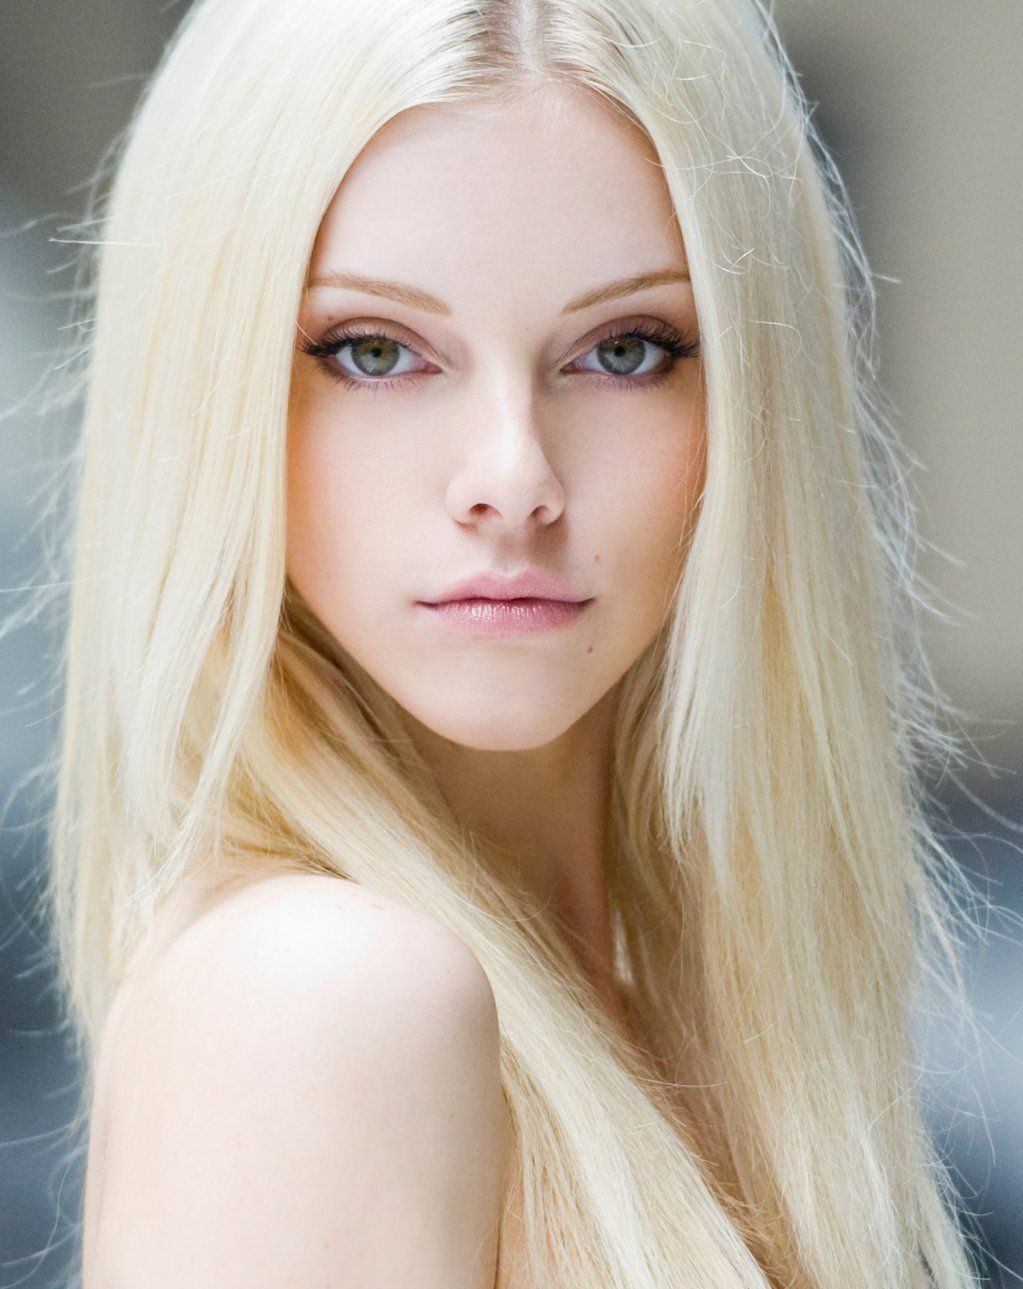 Платиновый цвет волос: фото блондинок с модным оттенком, обзор профессионал...